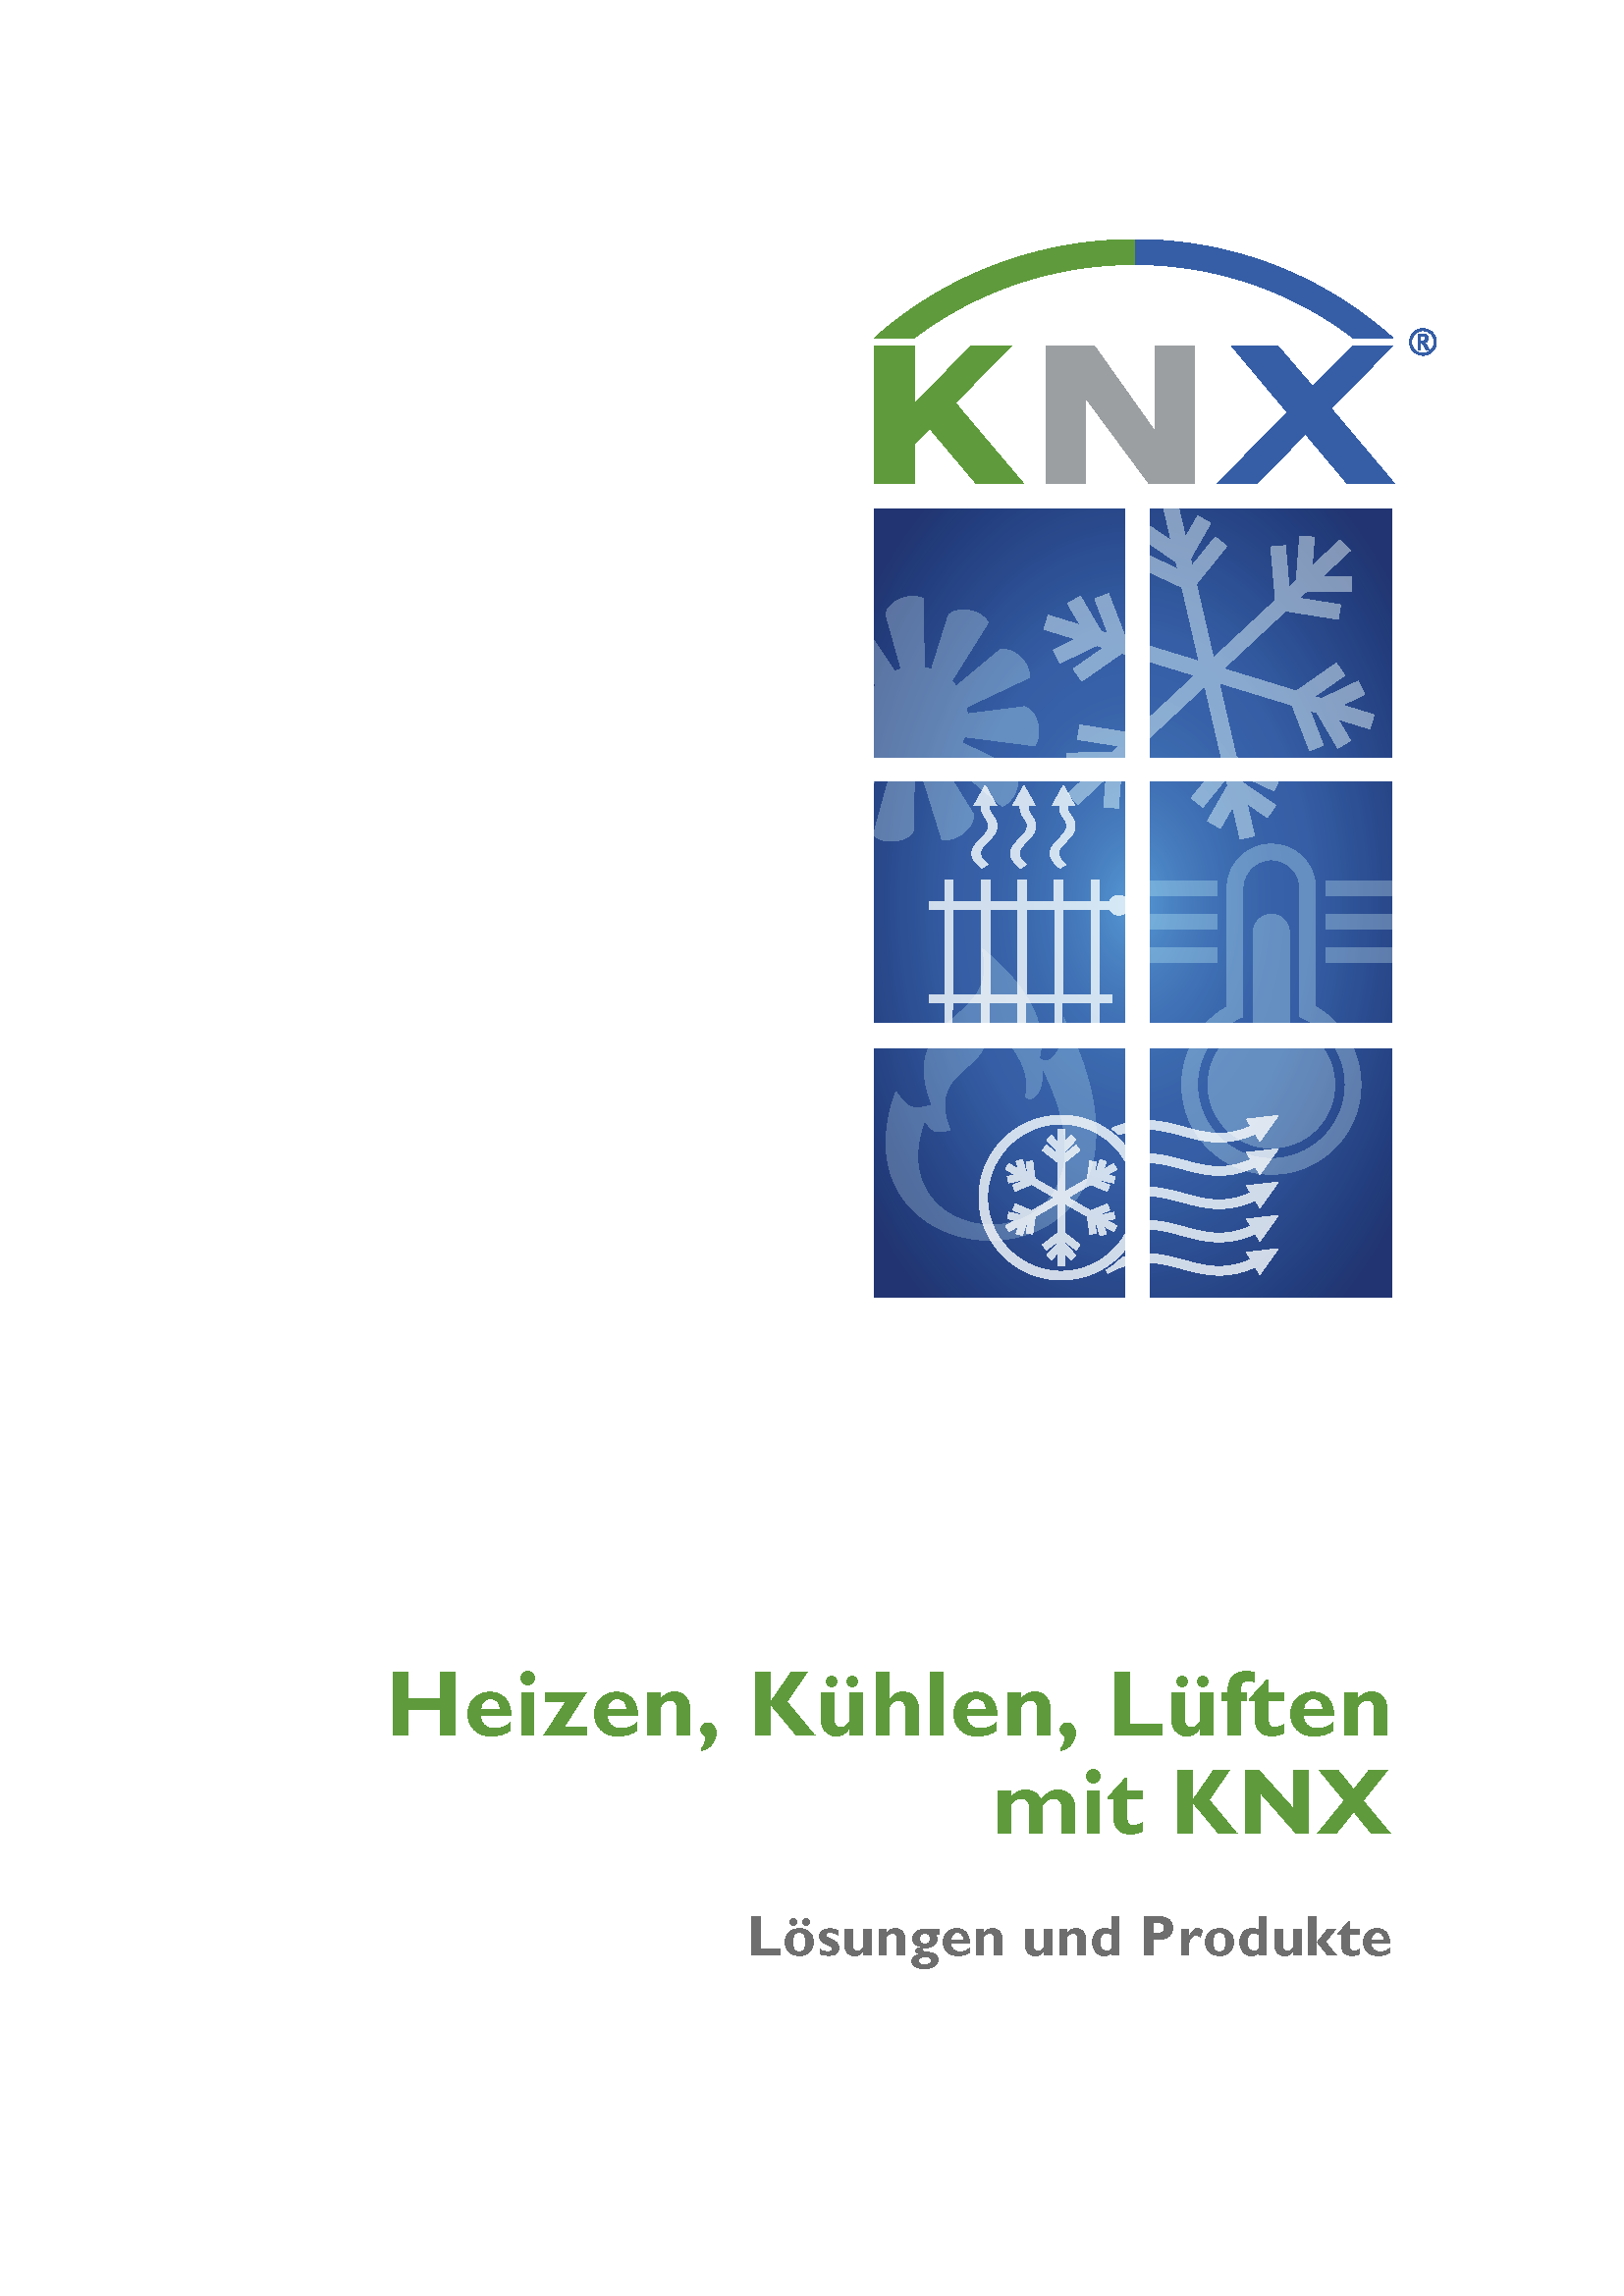 Gran demanda de capacitación para KNX sobre el ámbito HVAC